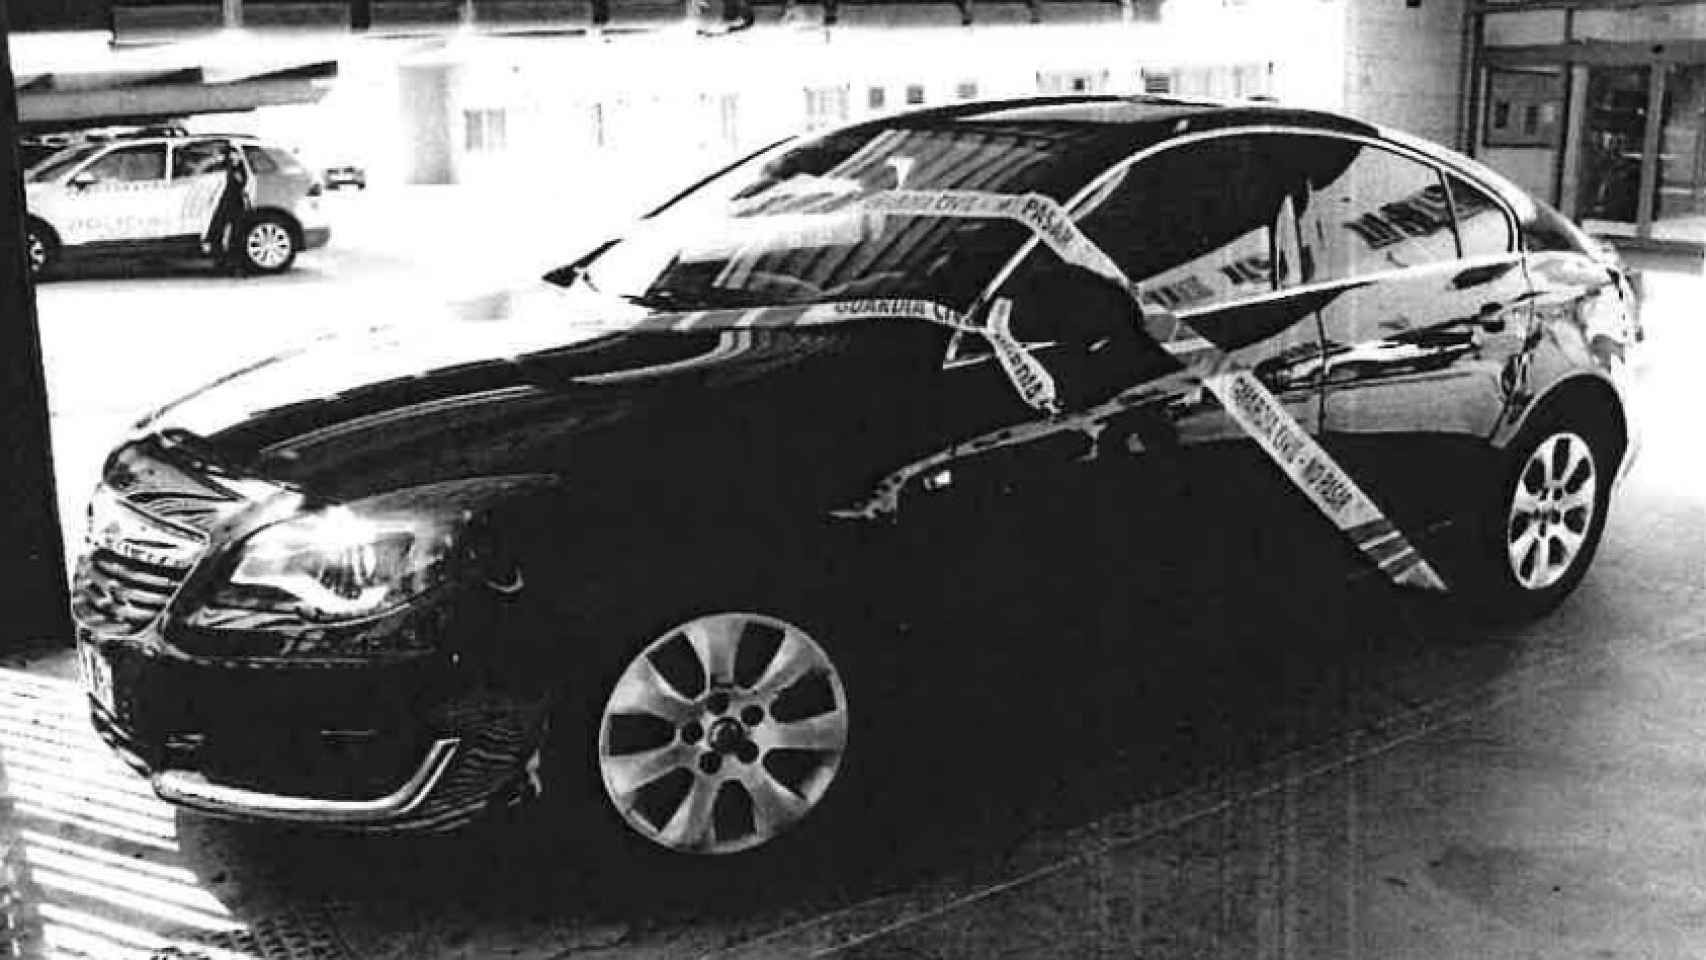 Opel Insignia en el que emprendieron la huida los presuntos sicarios.